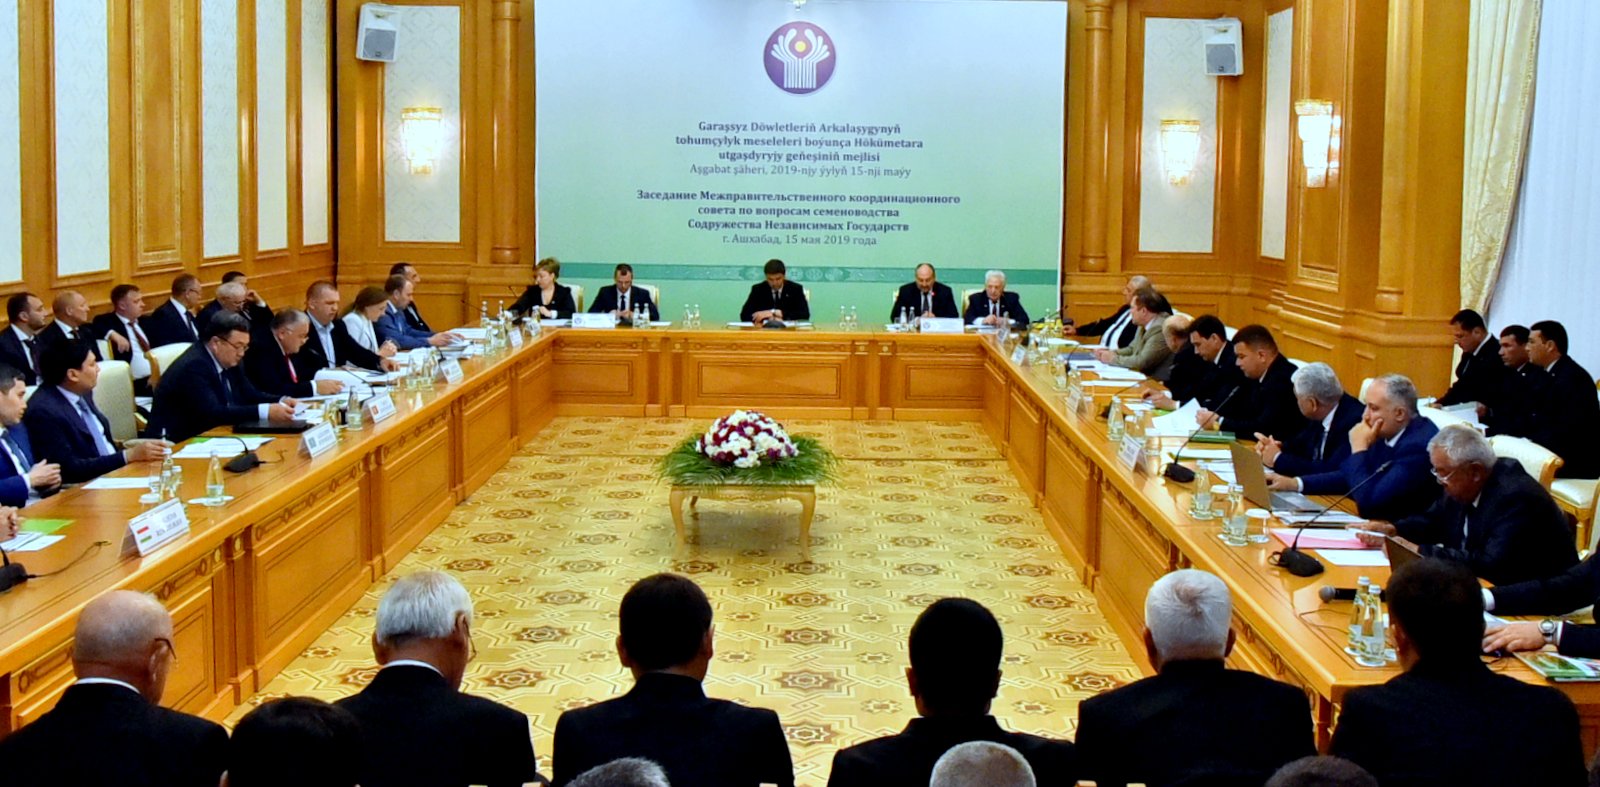 Туркменистан Ашхабад СГП СНГ 2019 заседание. Заседание Координационного совета по санитарной охране стран СНГ. Туркмении подпишет межправительственное соглашение в газовой сфере.